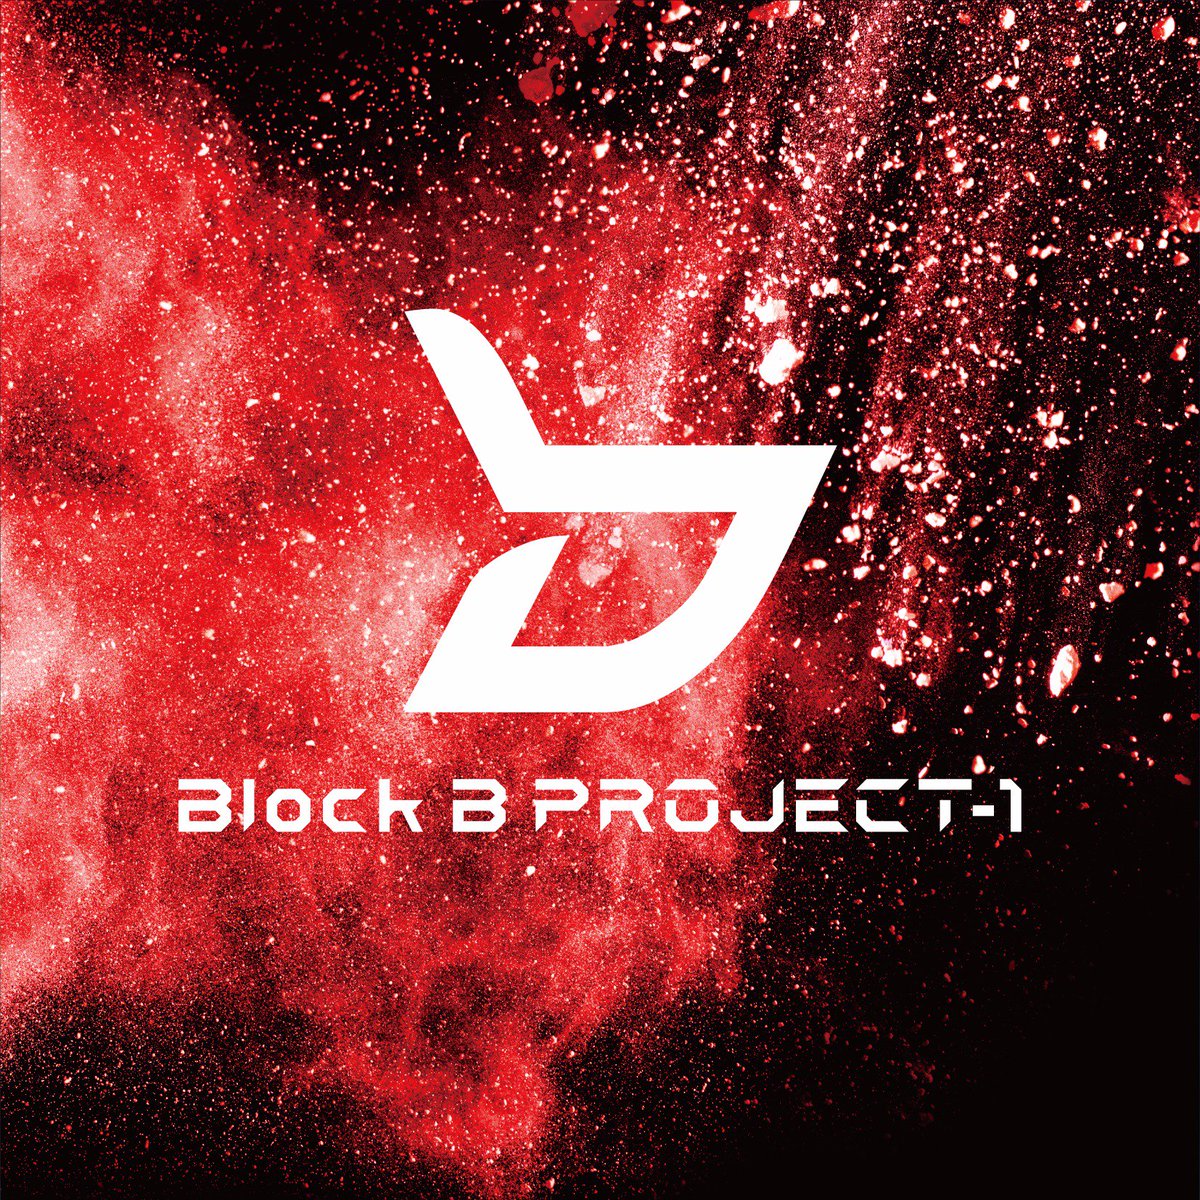 파일:BLOCK B PROJECT-1 Red.jpg